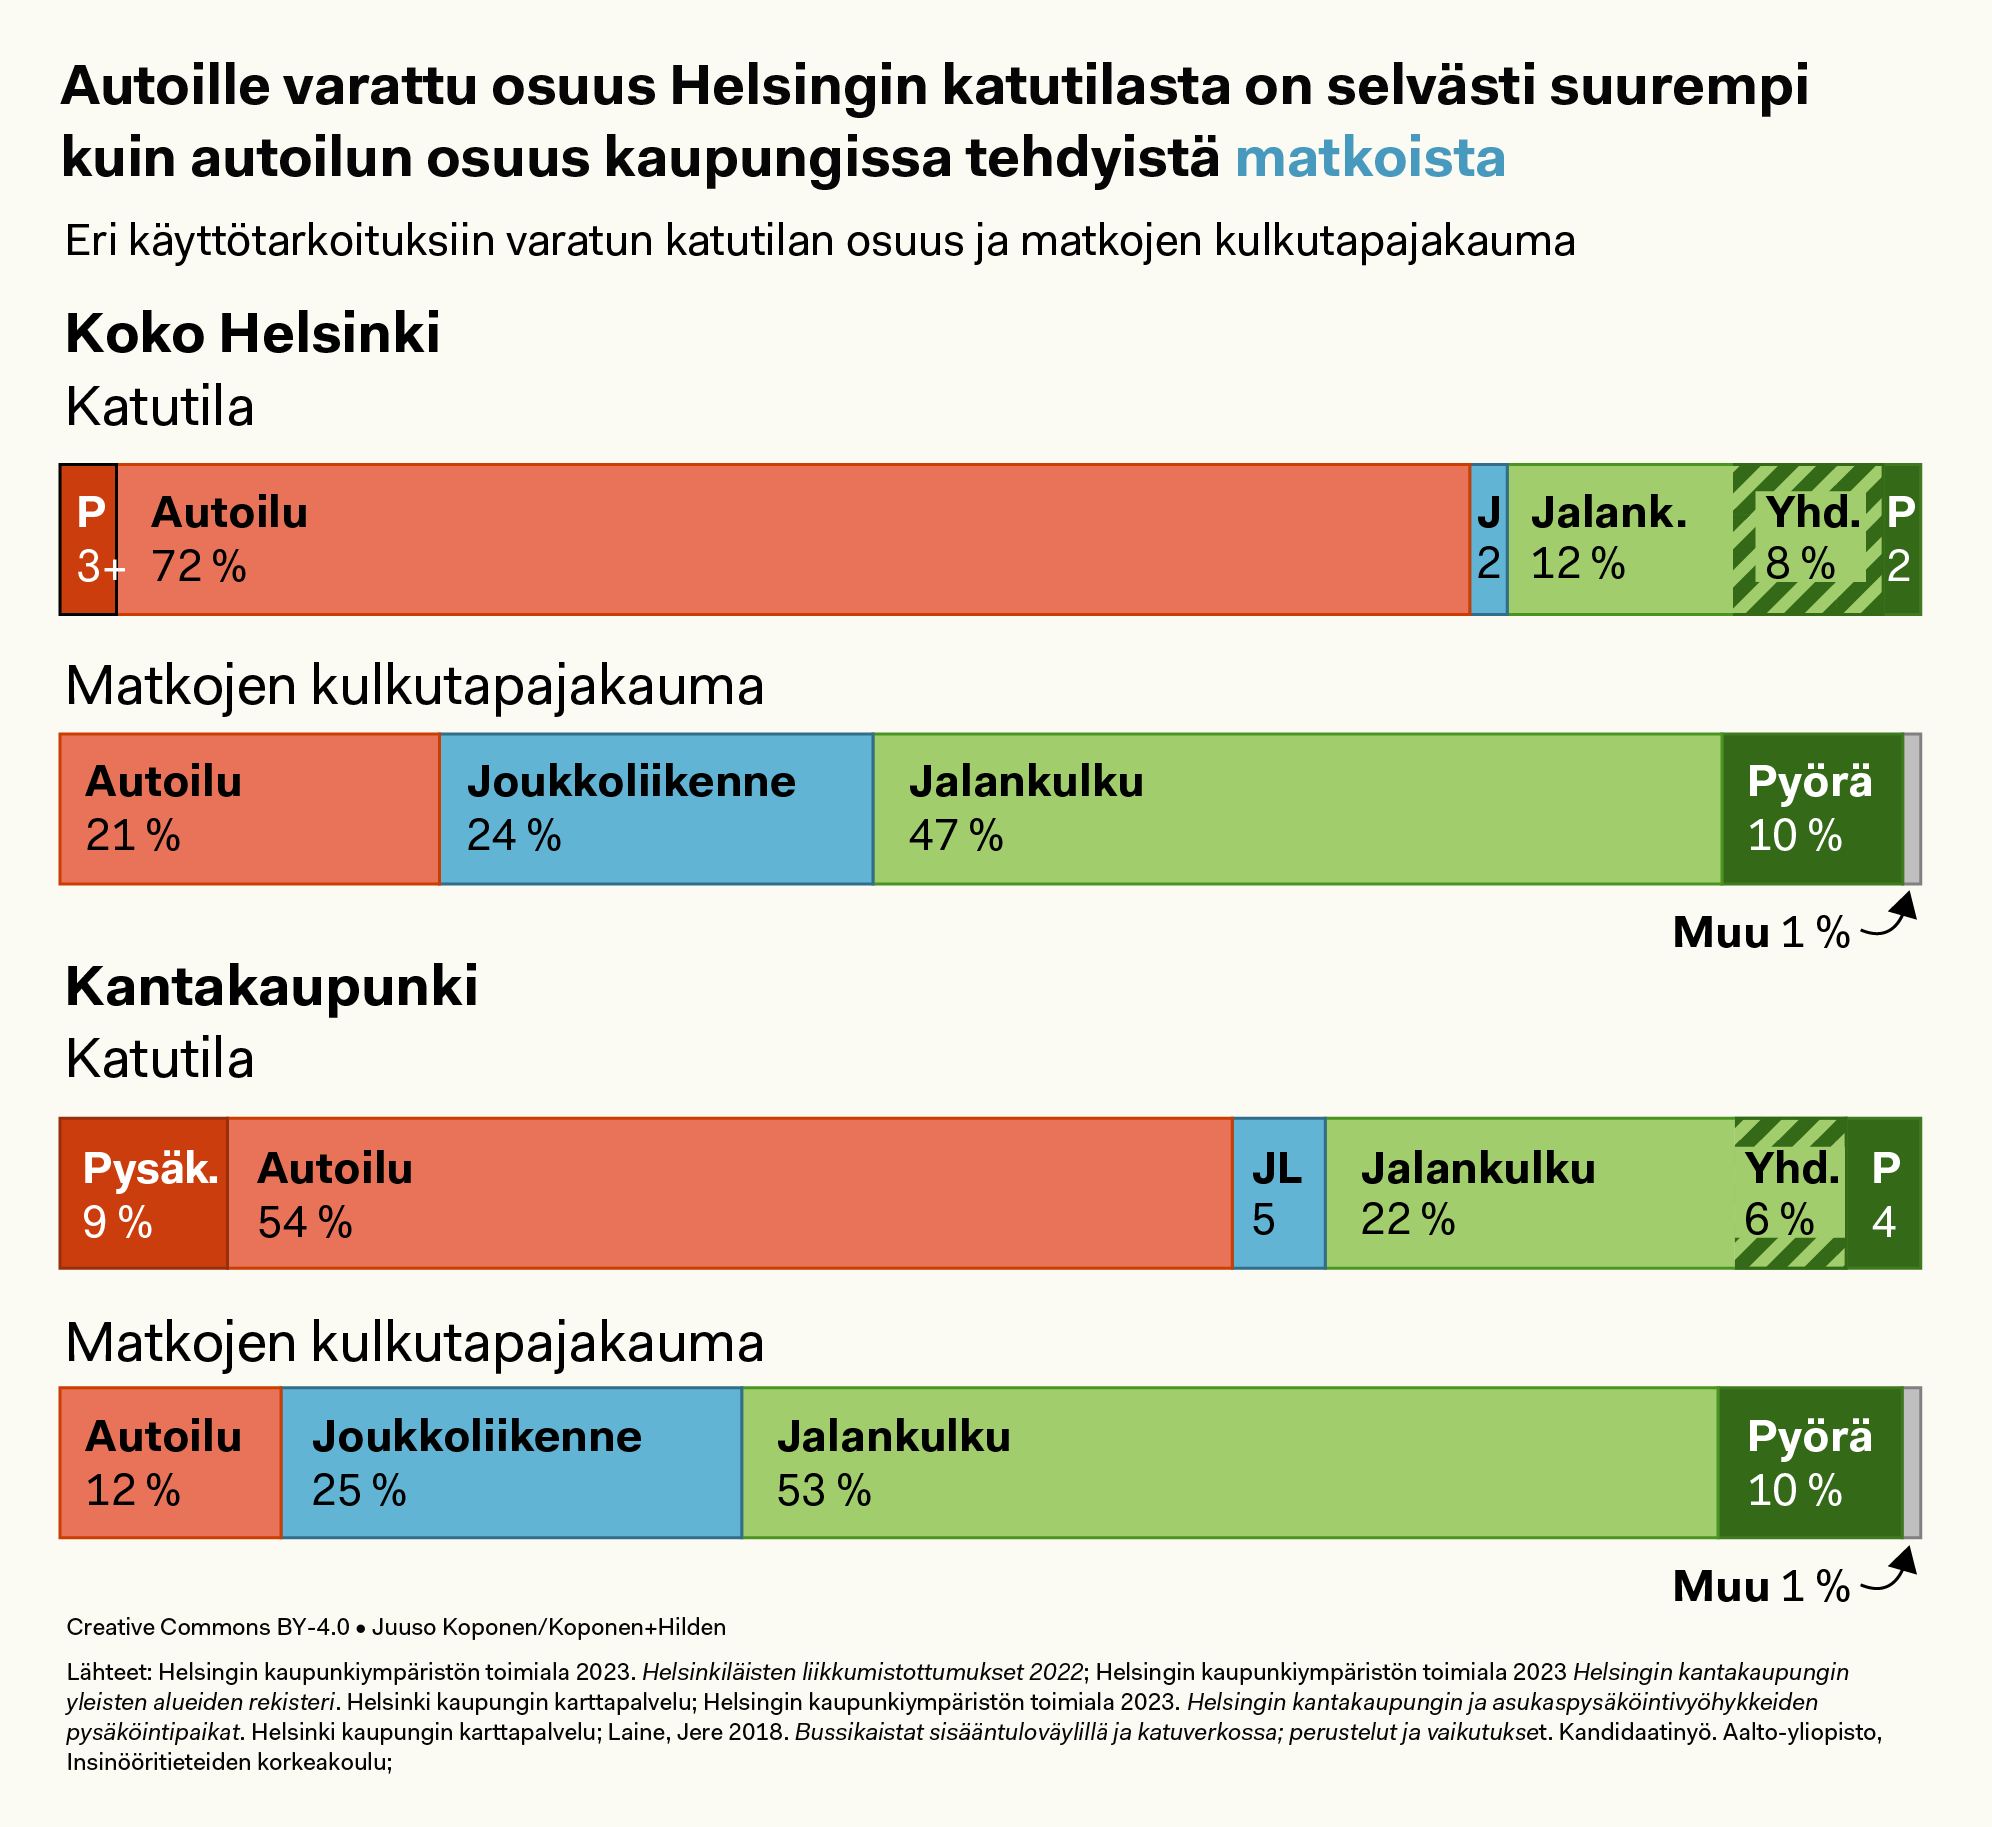 Varattu osuus katutilasta verrattuna matkojen kulkutapajakaumaan, prosenttipylväskuvio.

Koko Helsinki:
Katutila 72 % autoilu plus 3 % pysäköinti – kulkutapaosuus 21 %. Joukkoliikenne 2 %, kulkutapaosuus 24 %. Jalankulku 12 % plus 8 % yhdistettyä pyöräilyn kanssa, kulkutapaosuus 47 %. Pyöräily 2 % ja kulkutapaosuus 10 %. Muu kulkutapa 1 %.

Vain kantakaupunki:
Katutila 54 % autoilu plus 9 % pysäköinti – kulkutapaosuus 12 %. Joukkoliikenne 5 %, kulkutapaosuus 25 %. Jalankulku 22 % plus 6 % yhdistettyä pyöräilyn kanssa, kulkutapaosuus 53 %. Pyöräily 4 % ja kulkutapaosuus 10 %. Muu kulkutapa 1 %.


